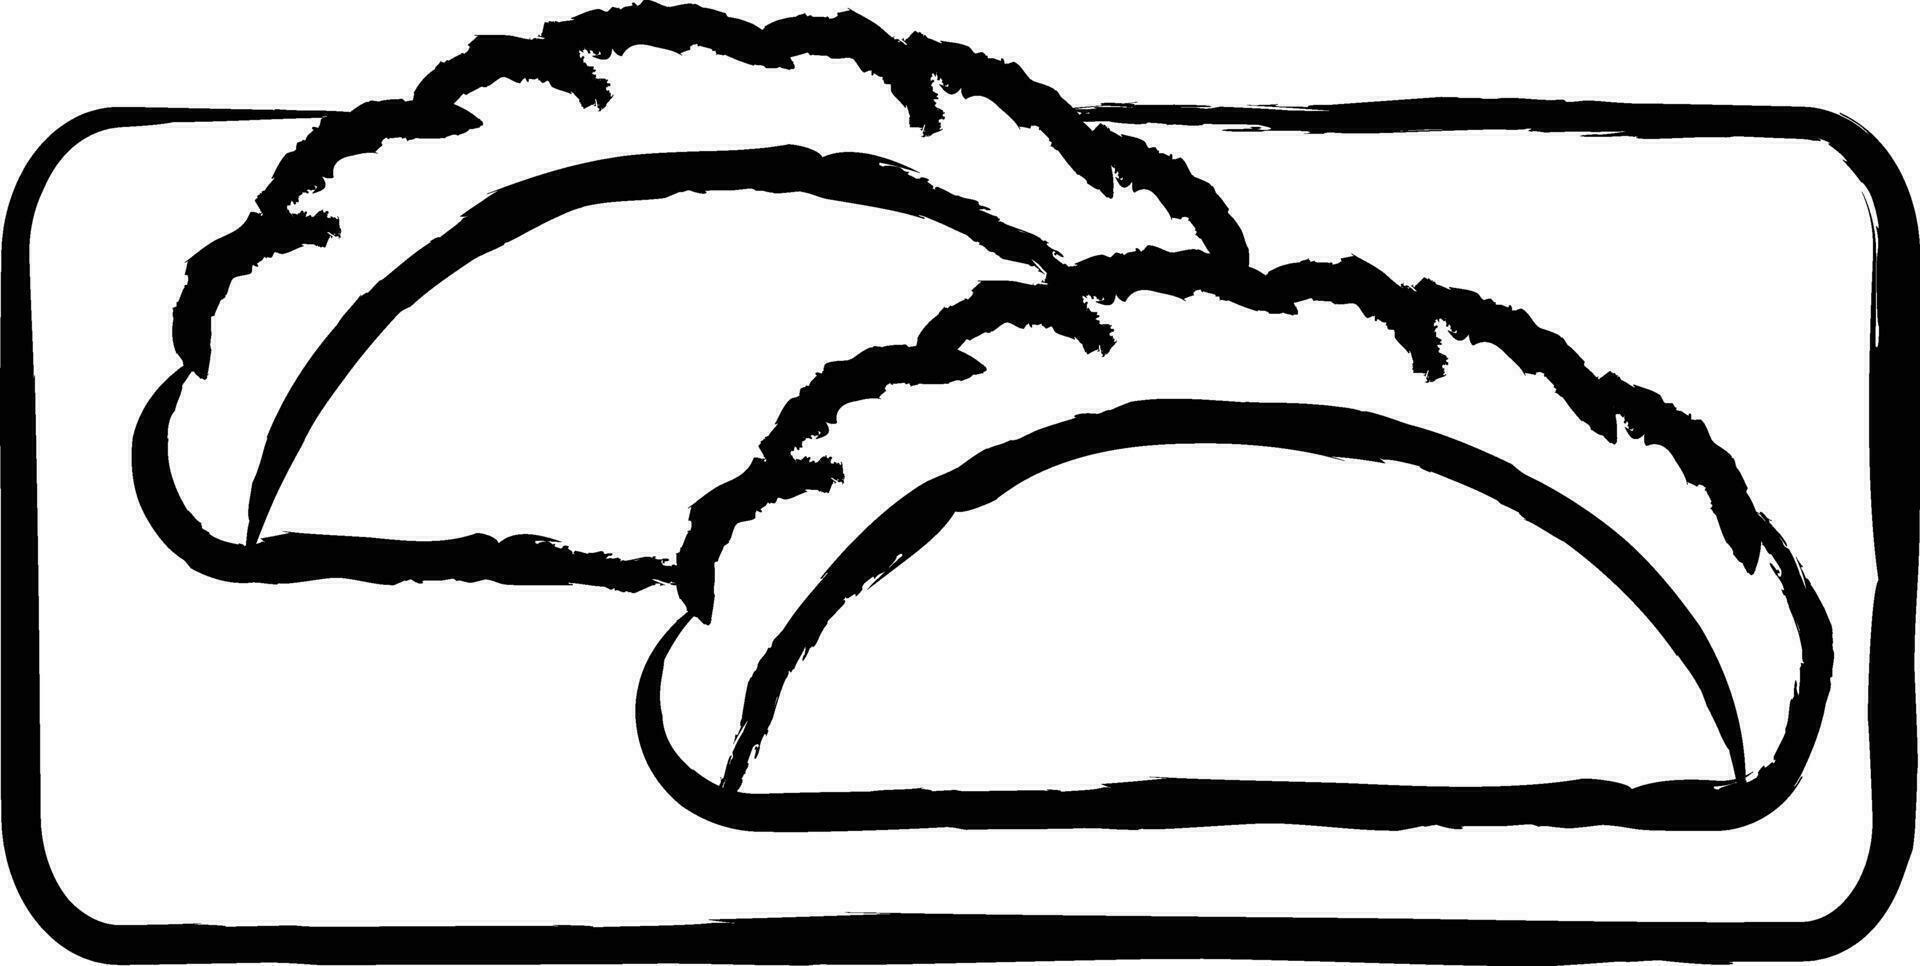 Calzone Gericht Hand gezeichnet Vektor Illustration